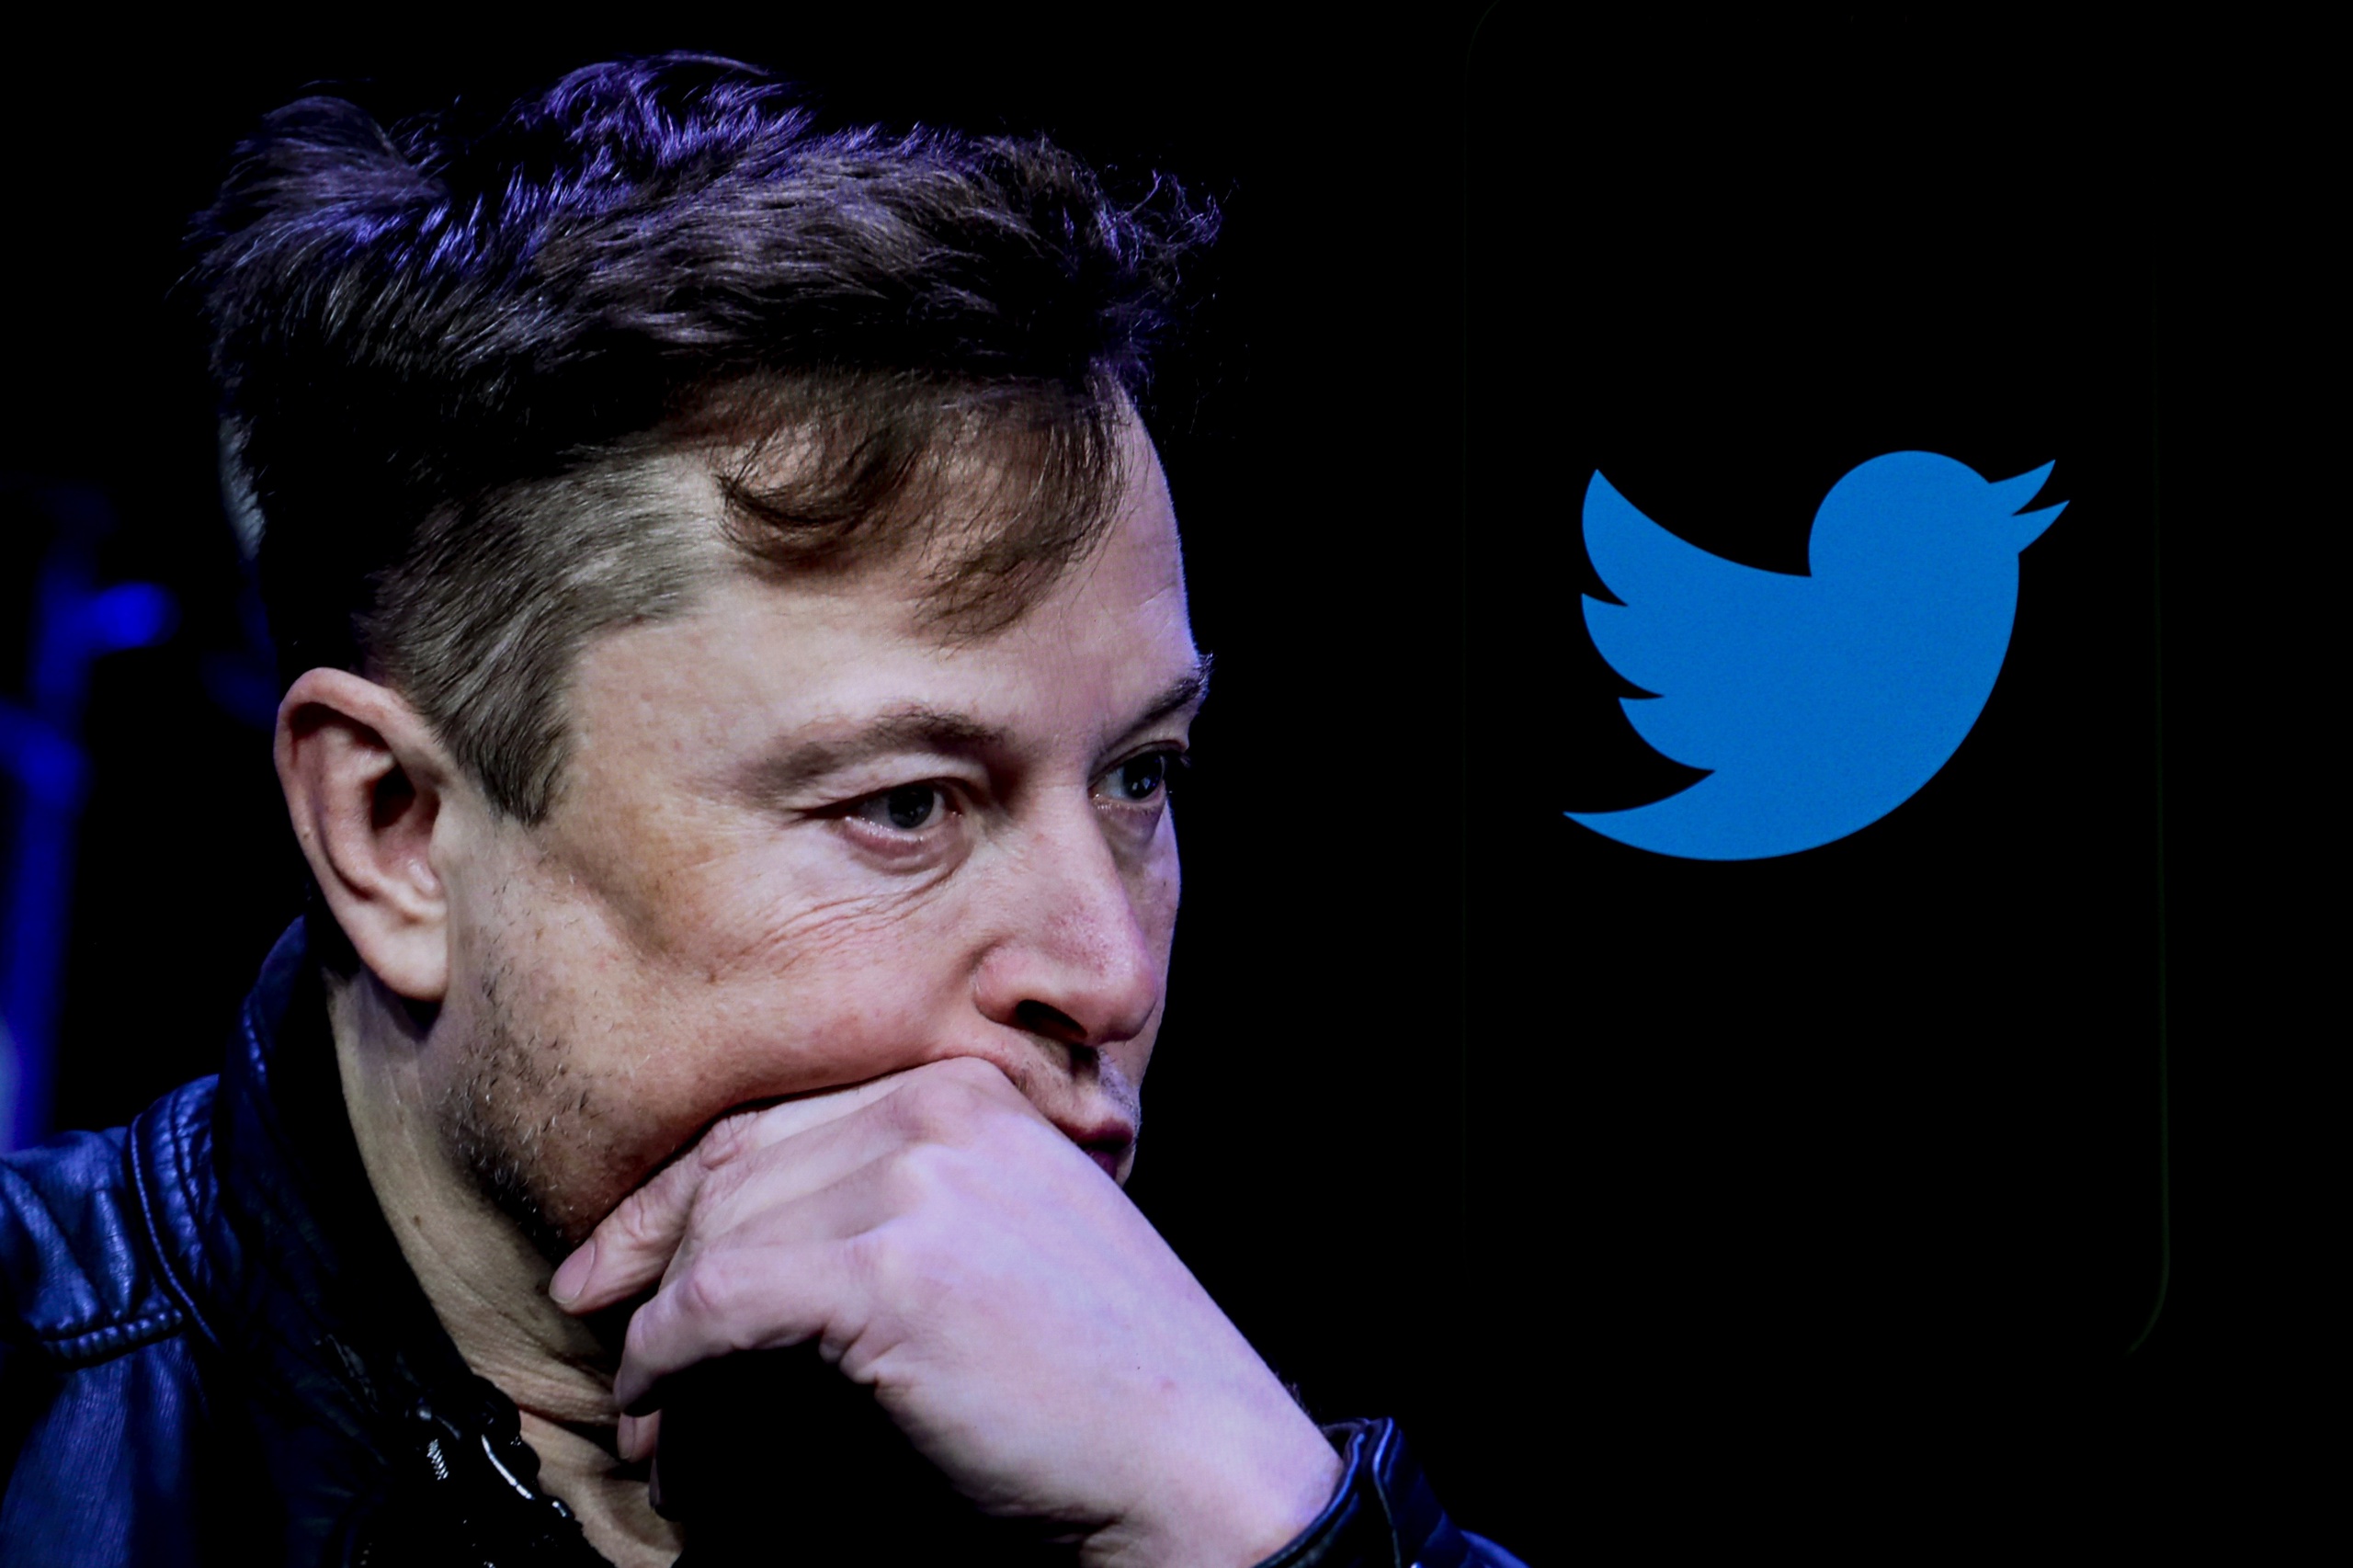 De federale autoriteiten in de VS doen een onderzoek naar het gedrag van Elon Musk rond de overnamepoging van Twitter. Dat schrijven advocaten van Twitter in rechtbankdocumenten.